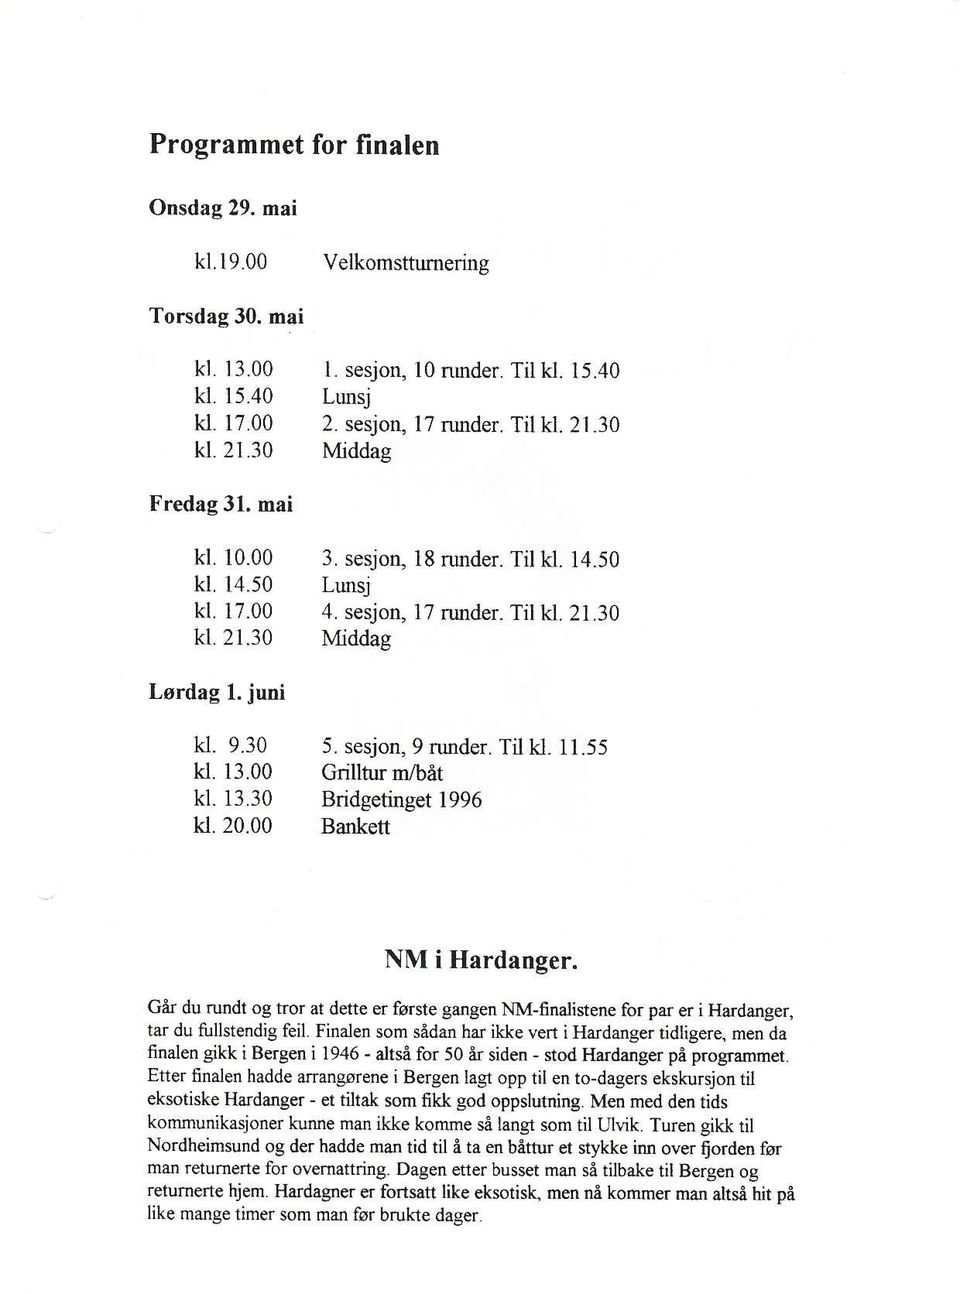 sesjon,9 nurder. Til kl. 11.55 kl. 13.00 crilltur m/båt kl. 13.30 Bridgetinget 1996 ki.20.00 Bankett NM i Hardanger.